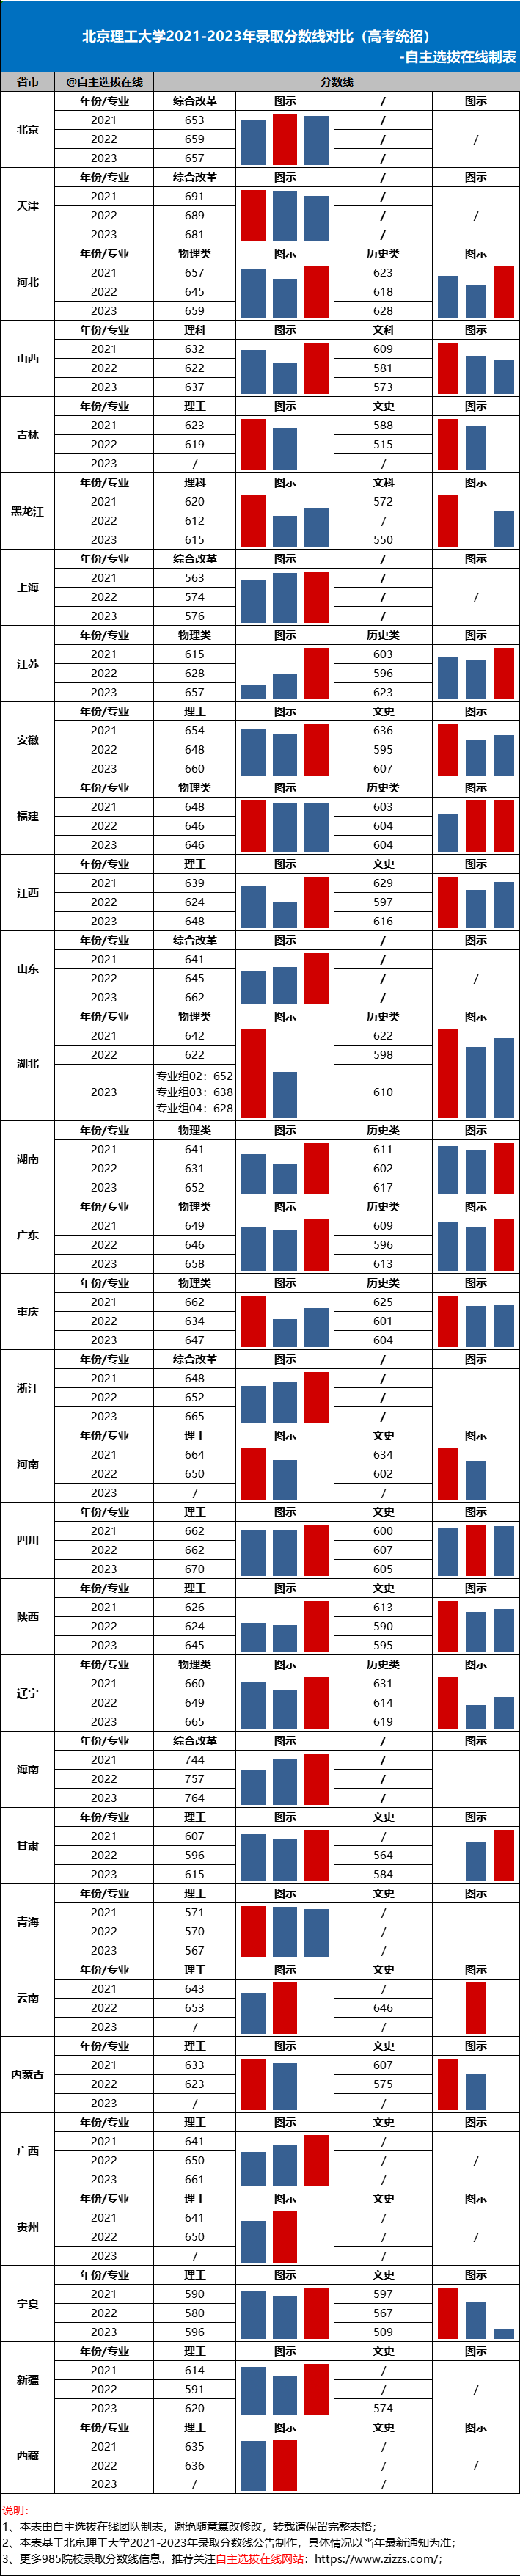 北京理工大学2021-2023年录取分数线对比分析